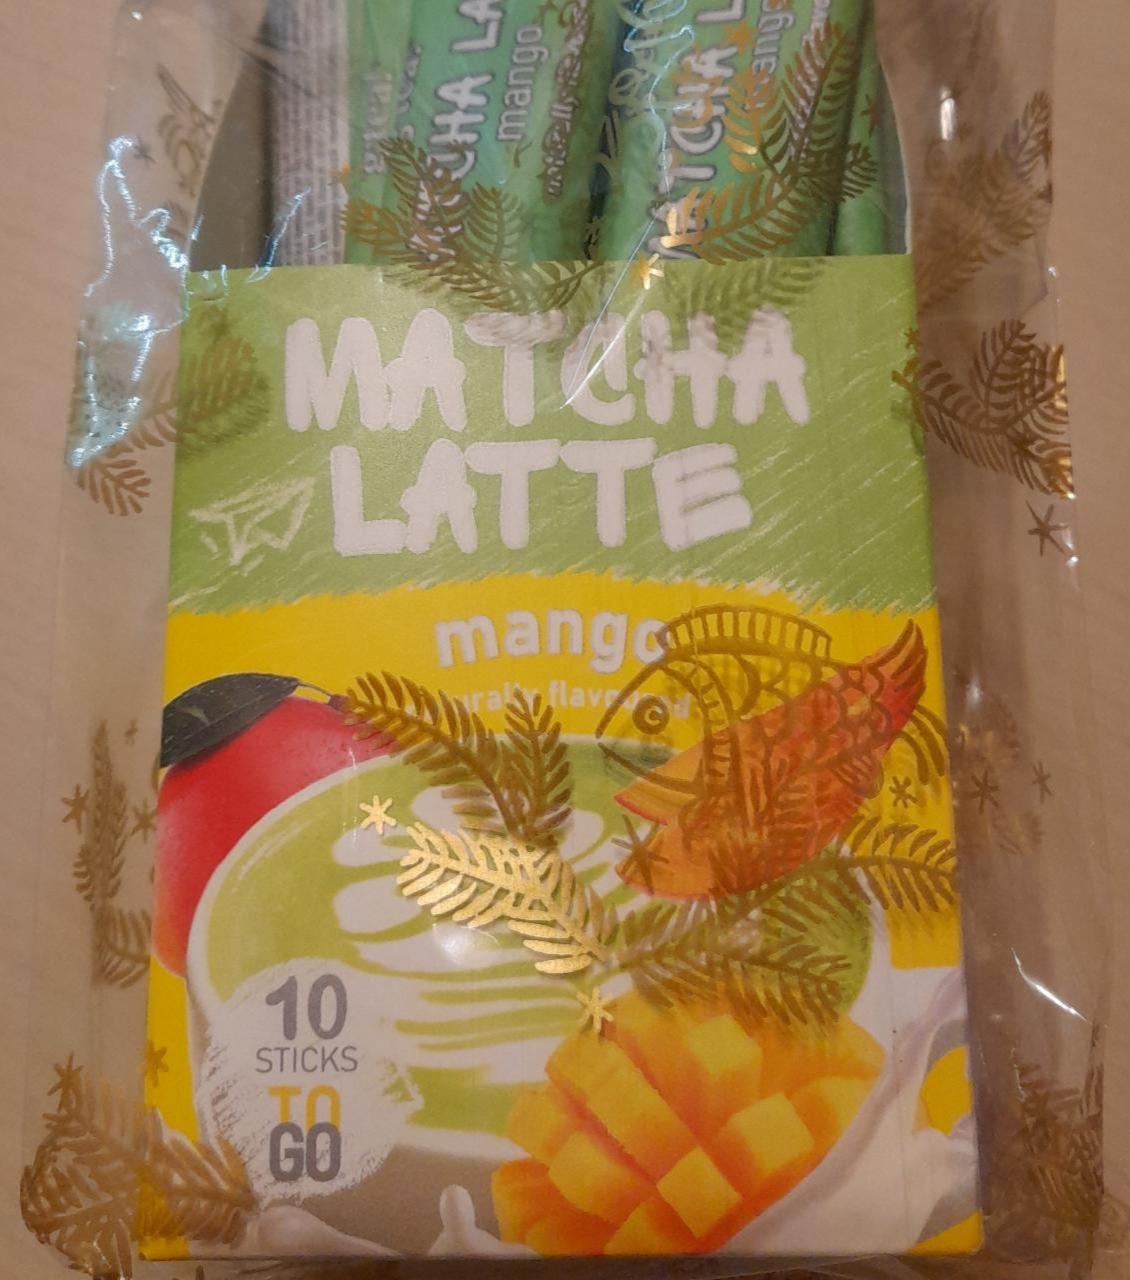 Fotografie - Matcha Latte Mango G'Tea!